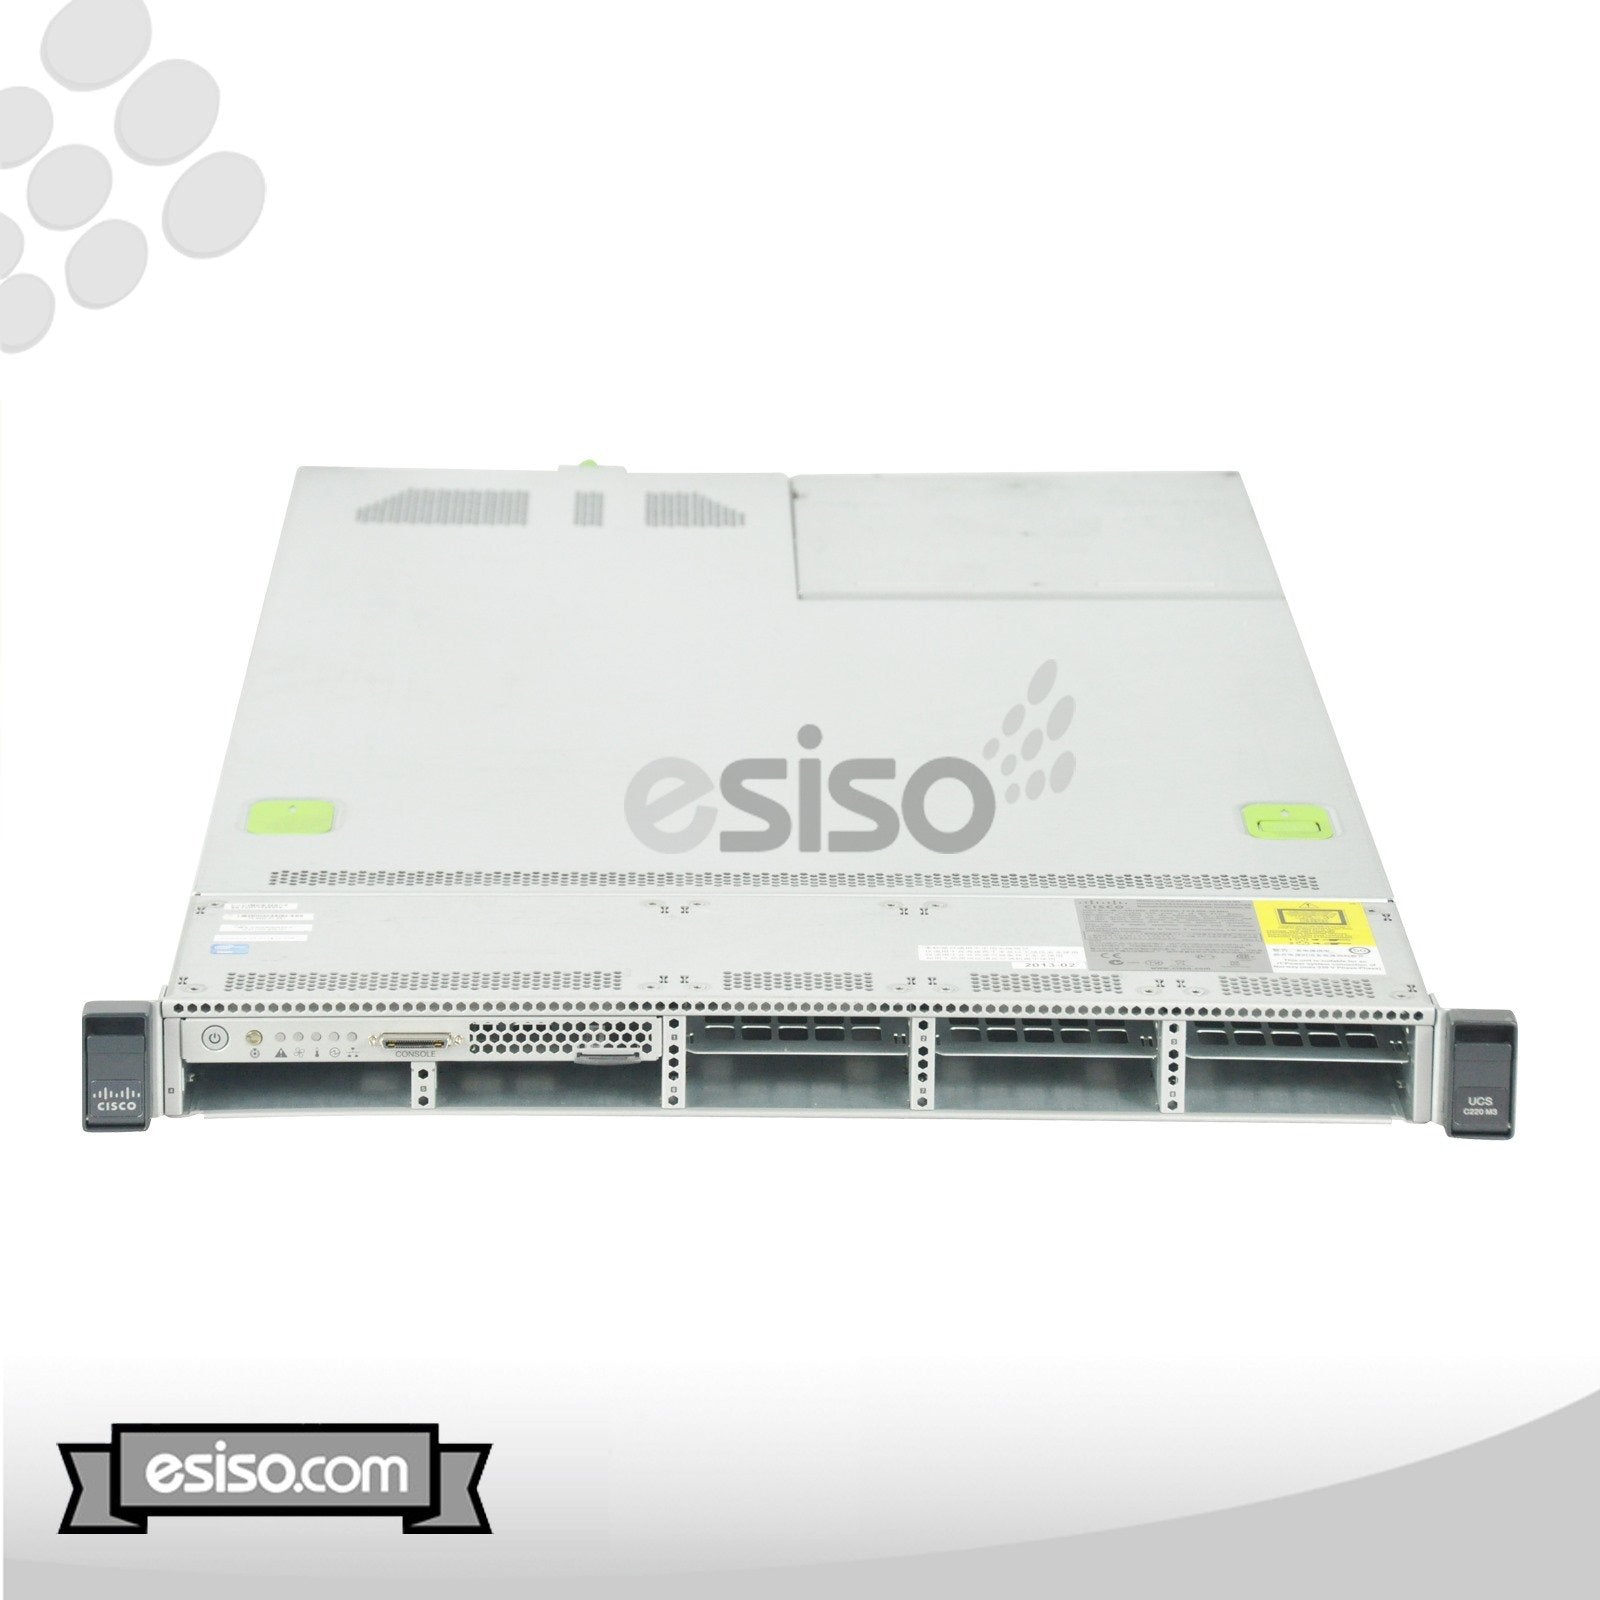 CISCO UCS C220 M3 8SFF SERVER 2x 8 CORE E5-2650v2 2.6GHz 64GB RAM NO HDD